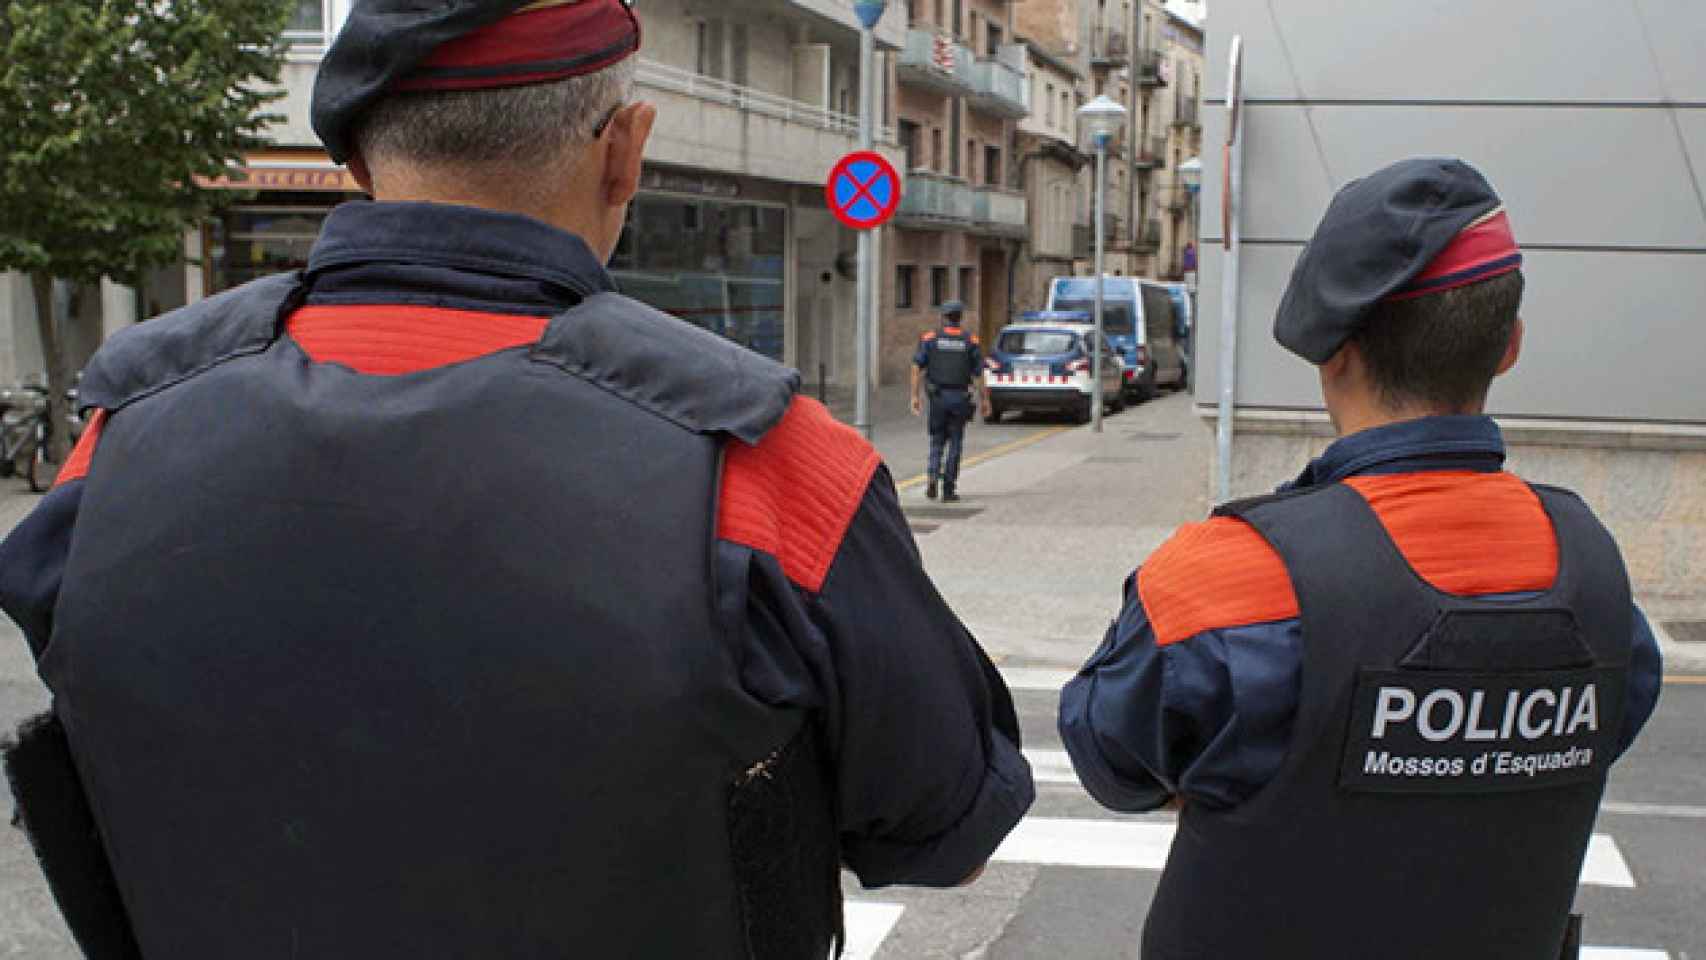 Una pareja de Mossos d'Esquadra, durante un operativo policial en una imagen de archivo / EFE